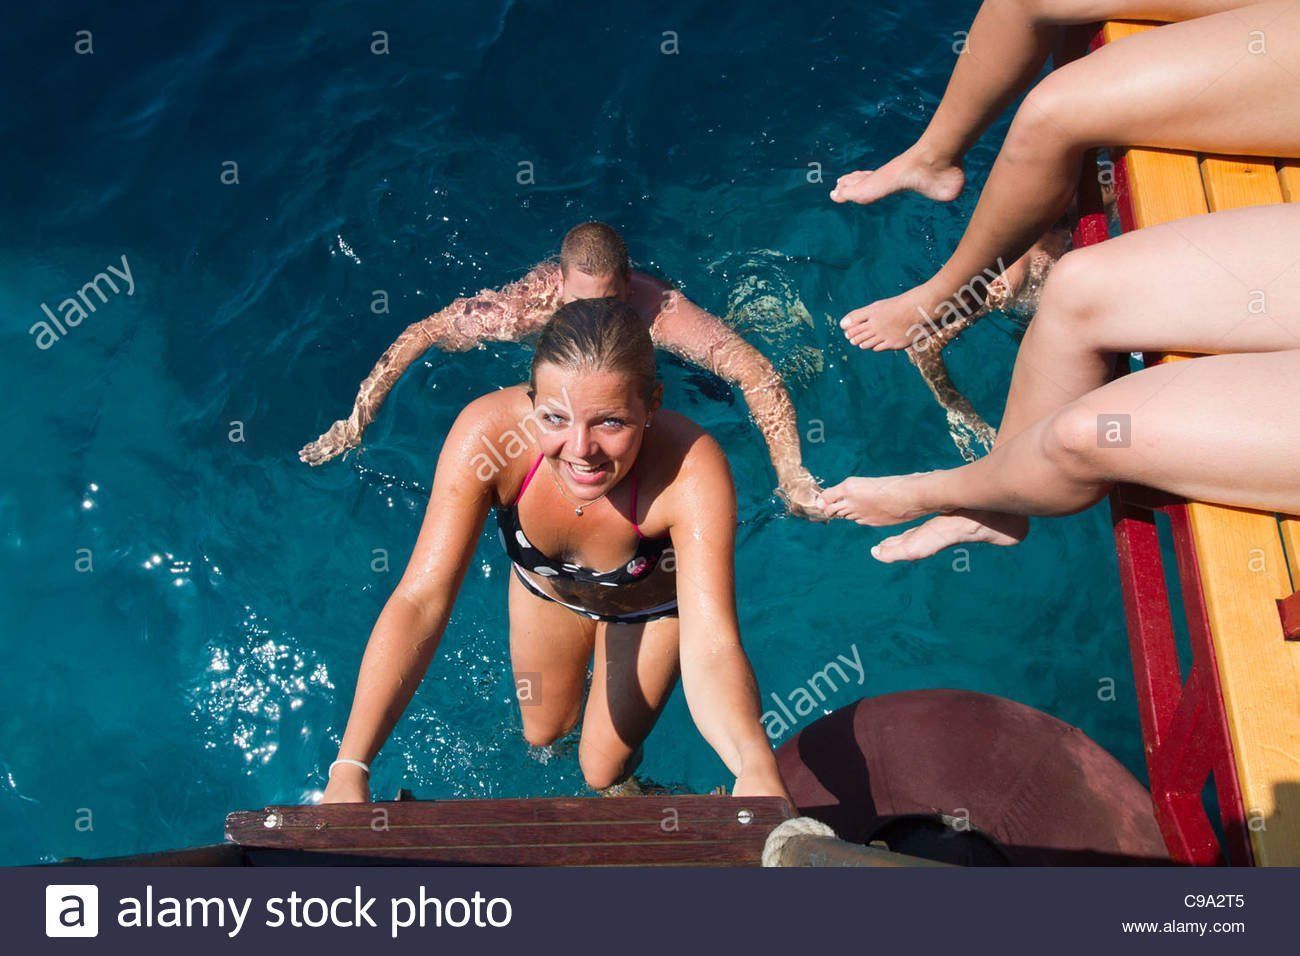 Choco reccomend Bikini girls lake hartwell